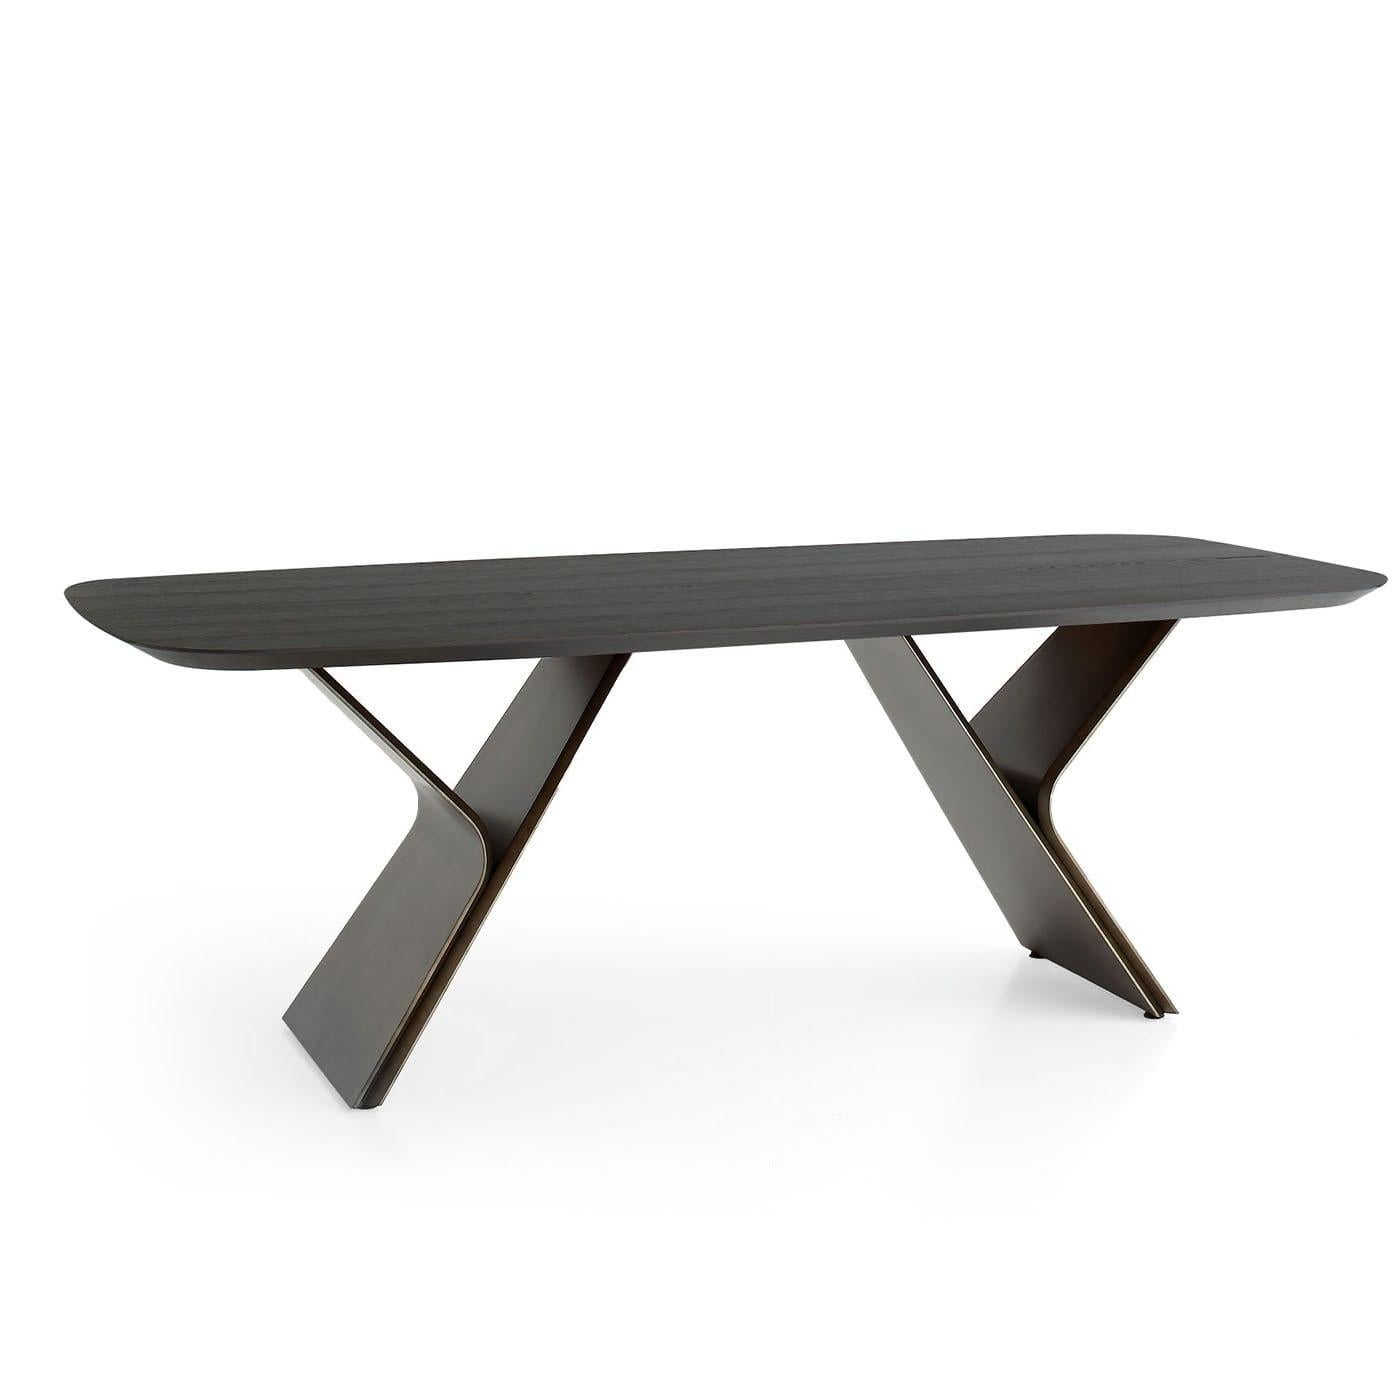 Metaverso Laguna Durmast-Veneered Table For Sale 1